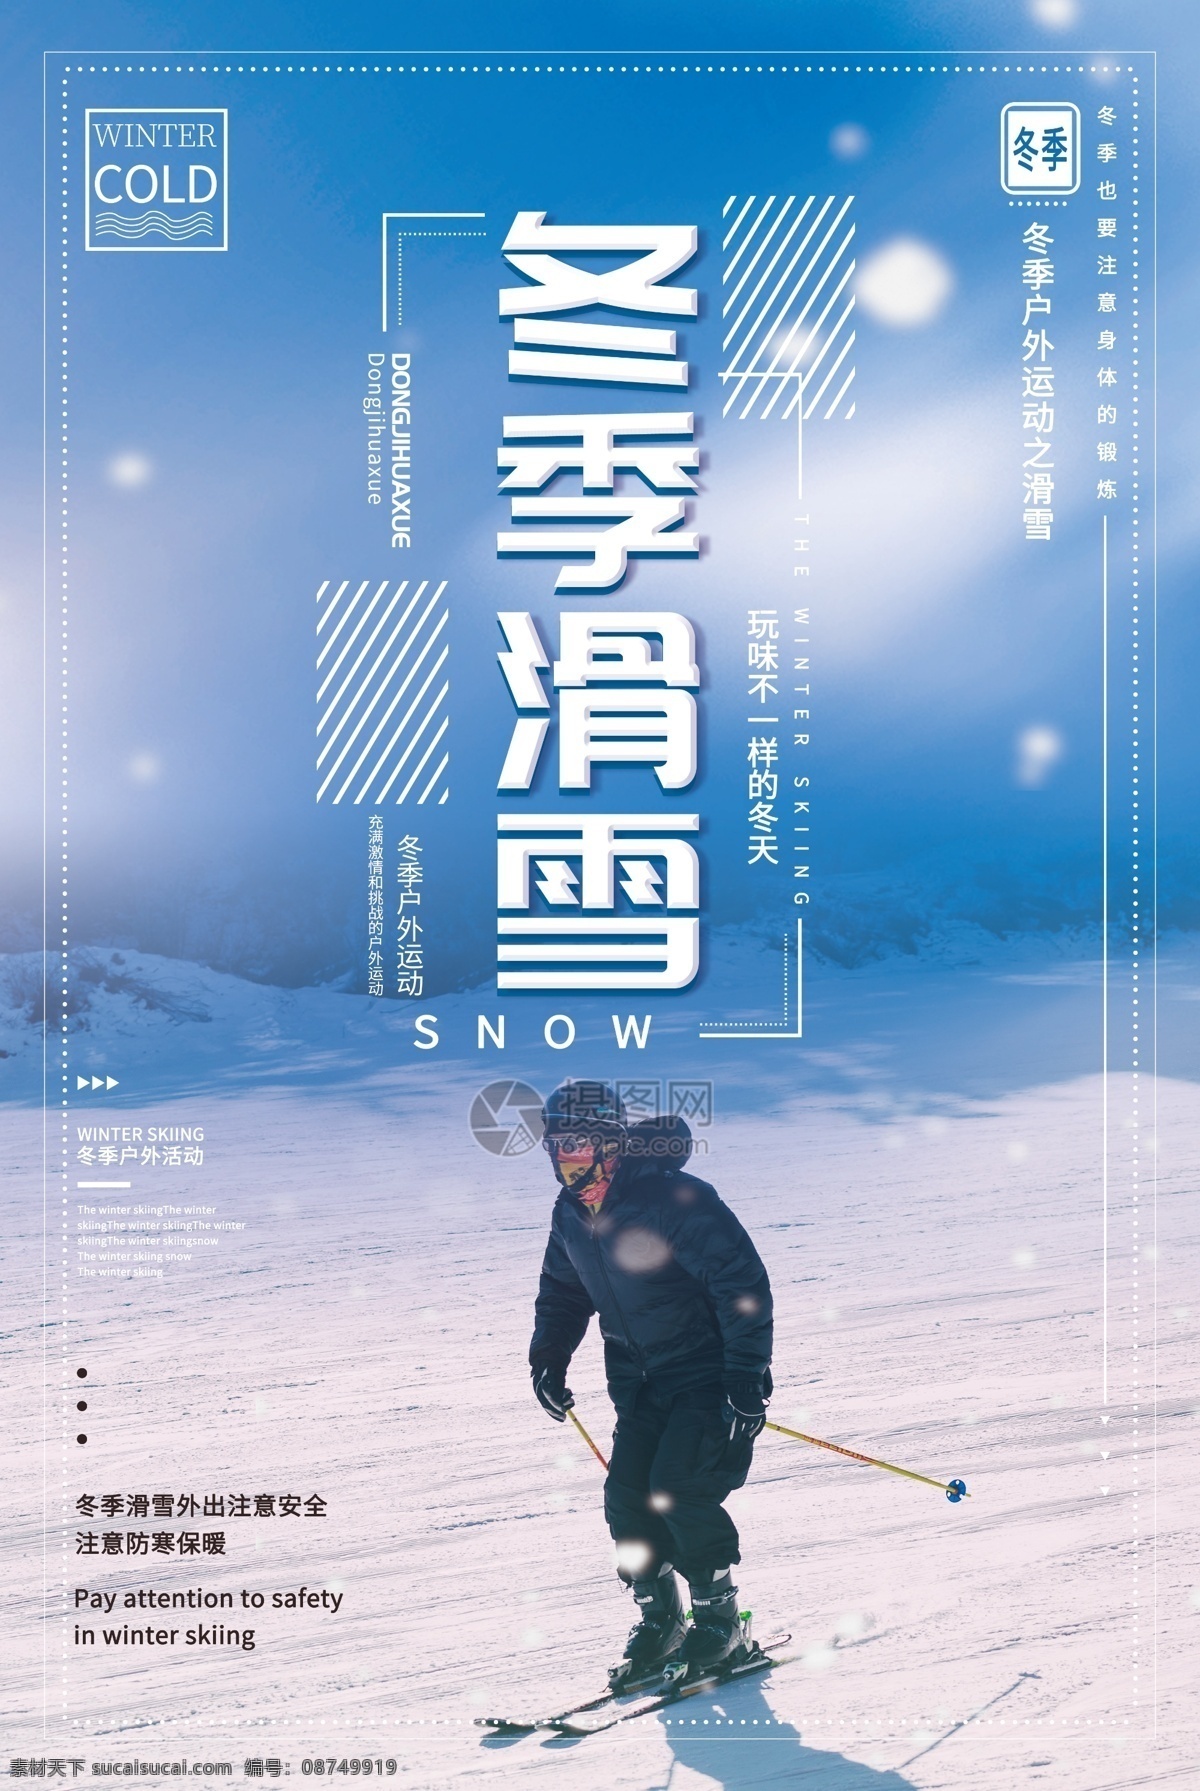 蓝色 冬季 滑雪 运动 海报 滑雪运动 冬季运动 北方 冬天 户外 活动 挑战 滑雪海报设计 冬季滑雪海报